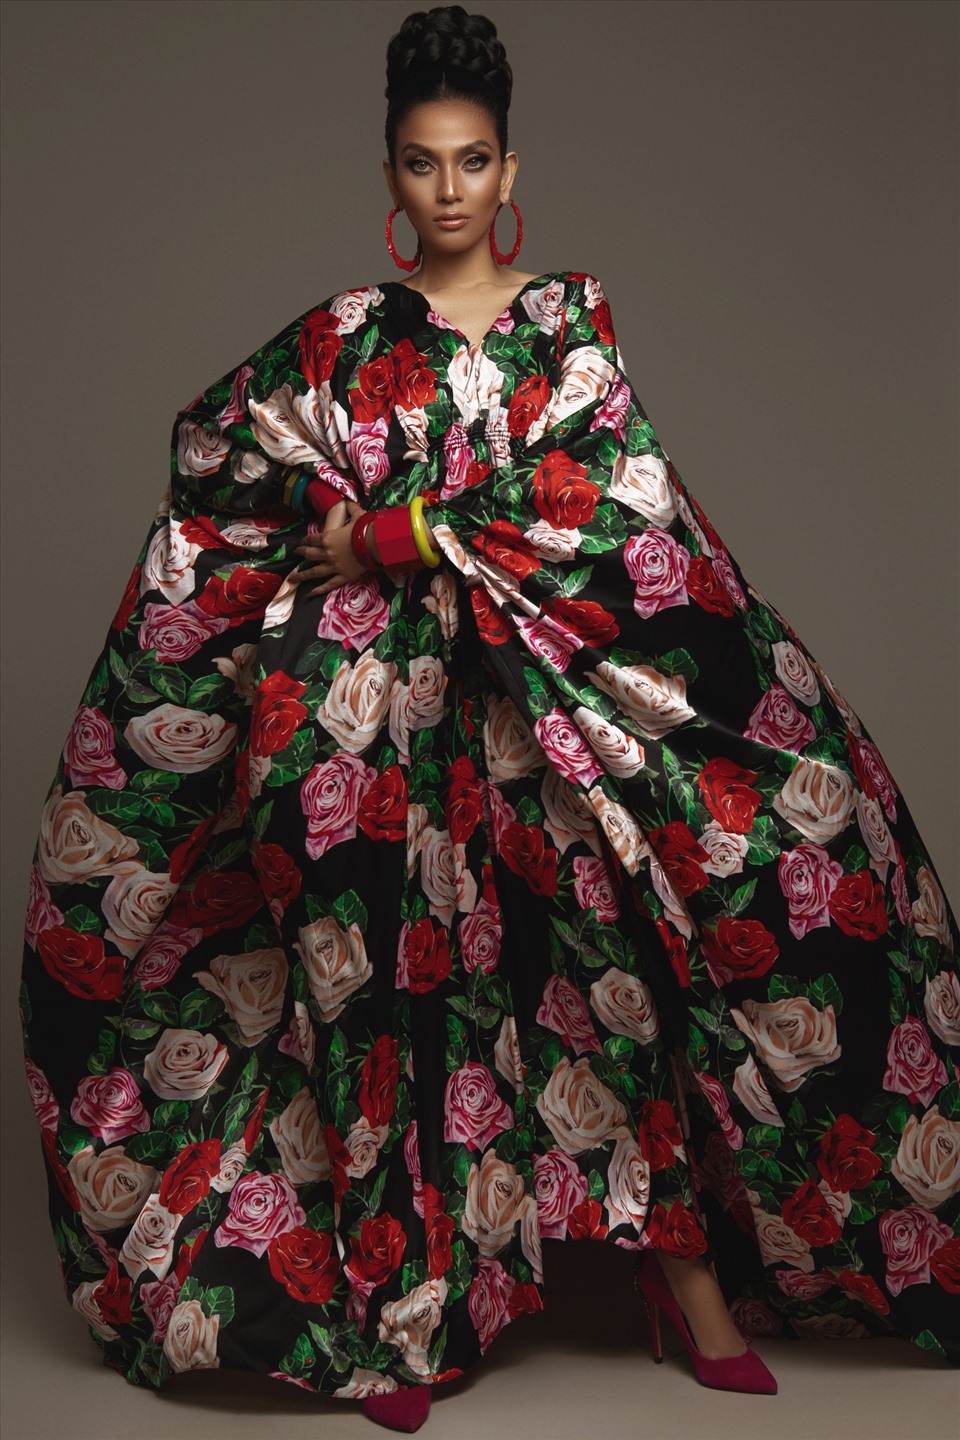 Đây là dịp hiếm hoi người đẹp sinh năm 1988 chọn mặc những bộ trang phục với hoa văn bắt mắt. Trước đó, Trương Thị May gắn liền với hình ảnh “Nữ hoàng đơn sắc” khi chỉ diện trang phục có màu sắc đơn lẻ.